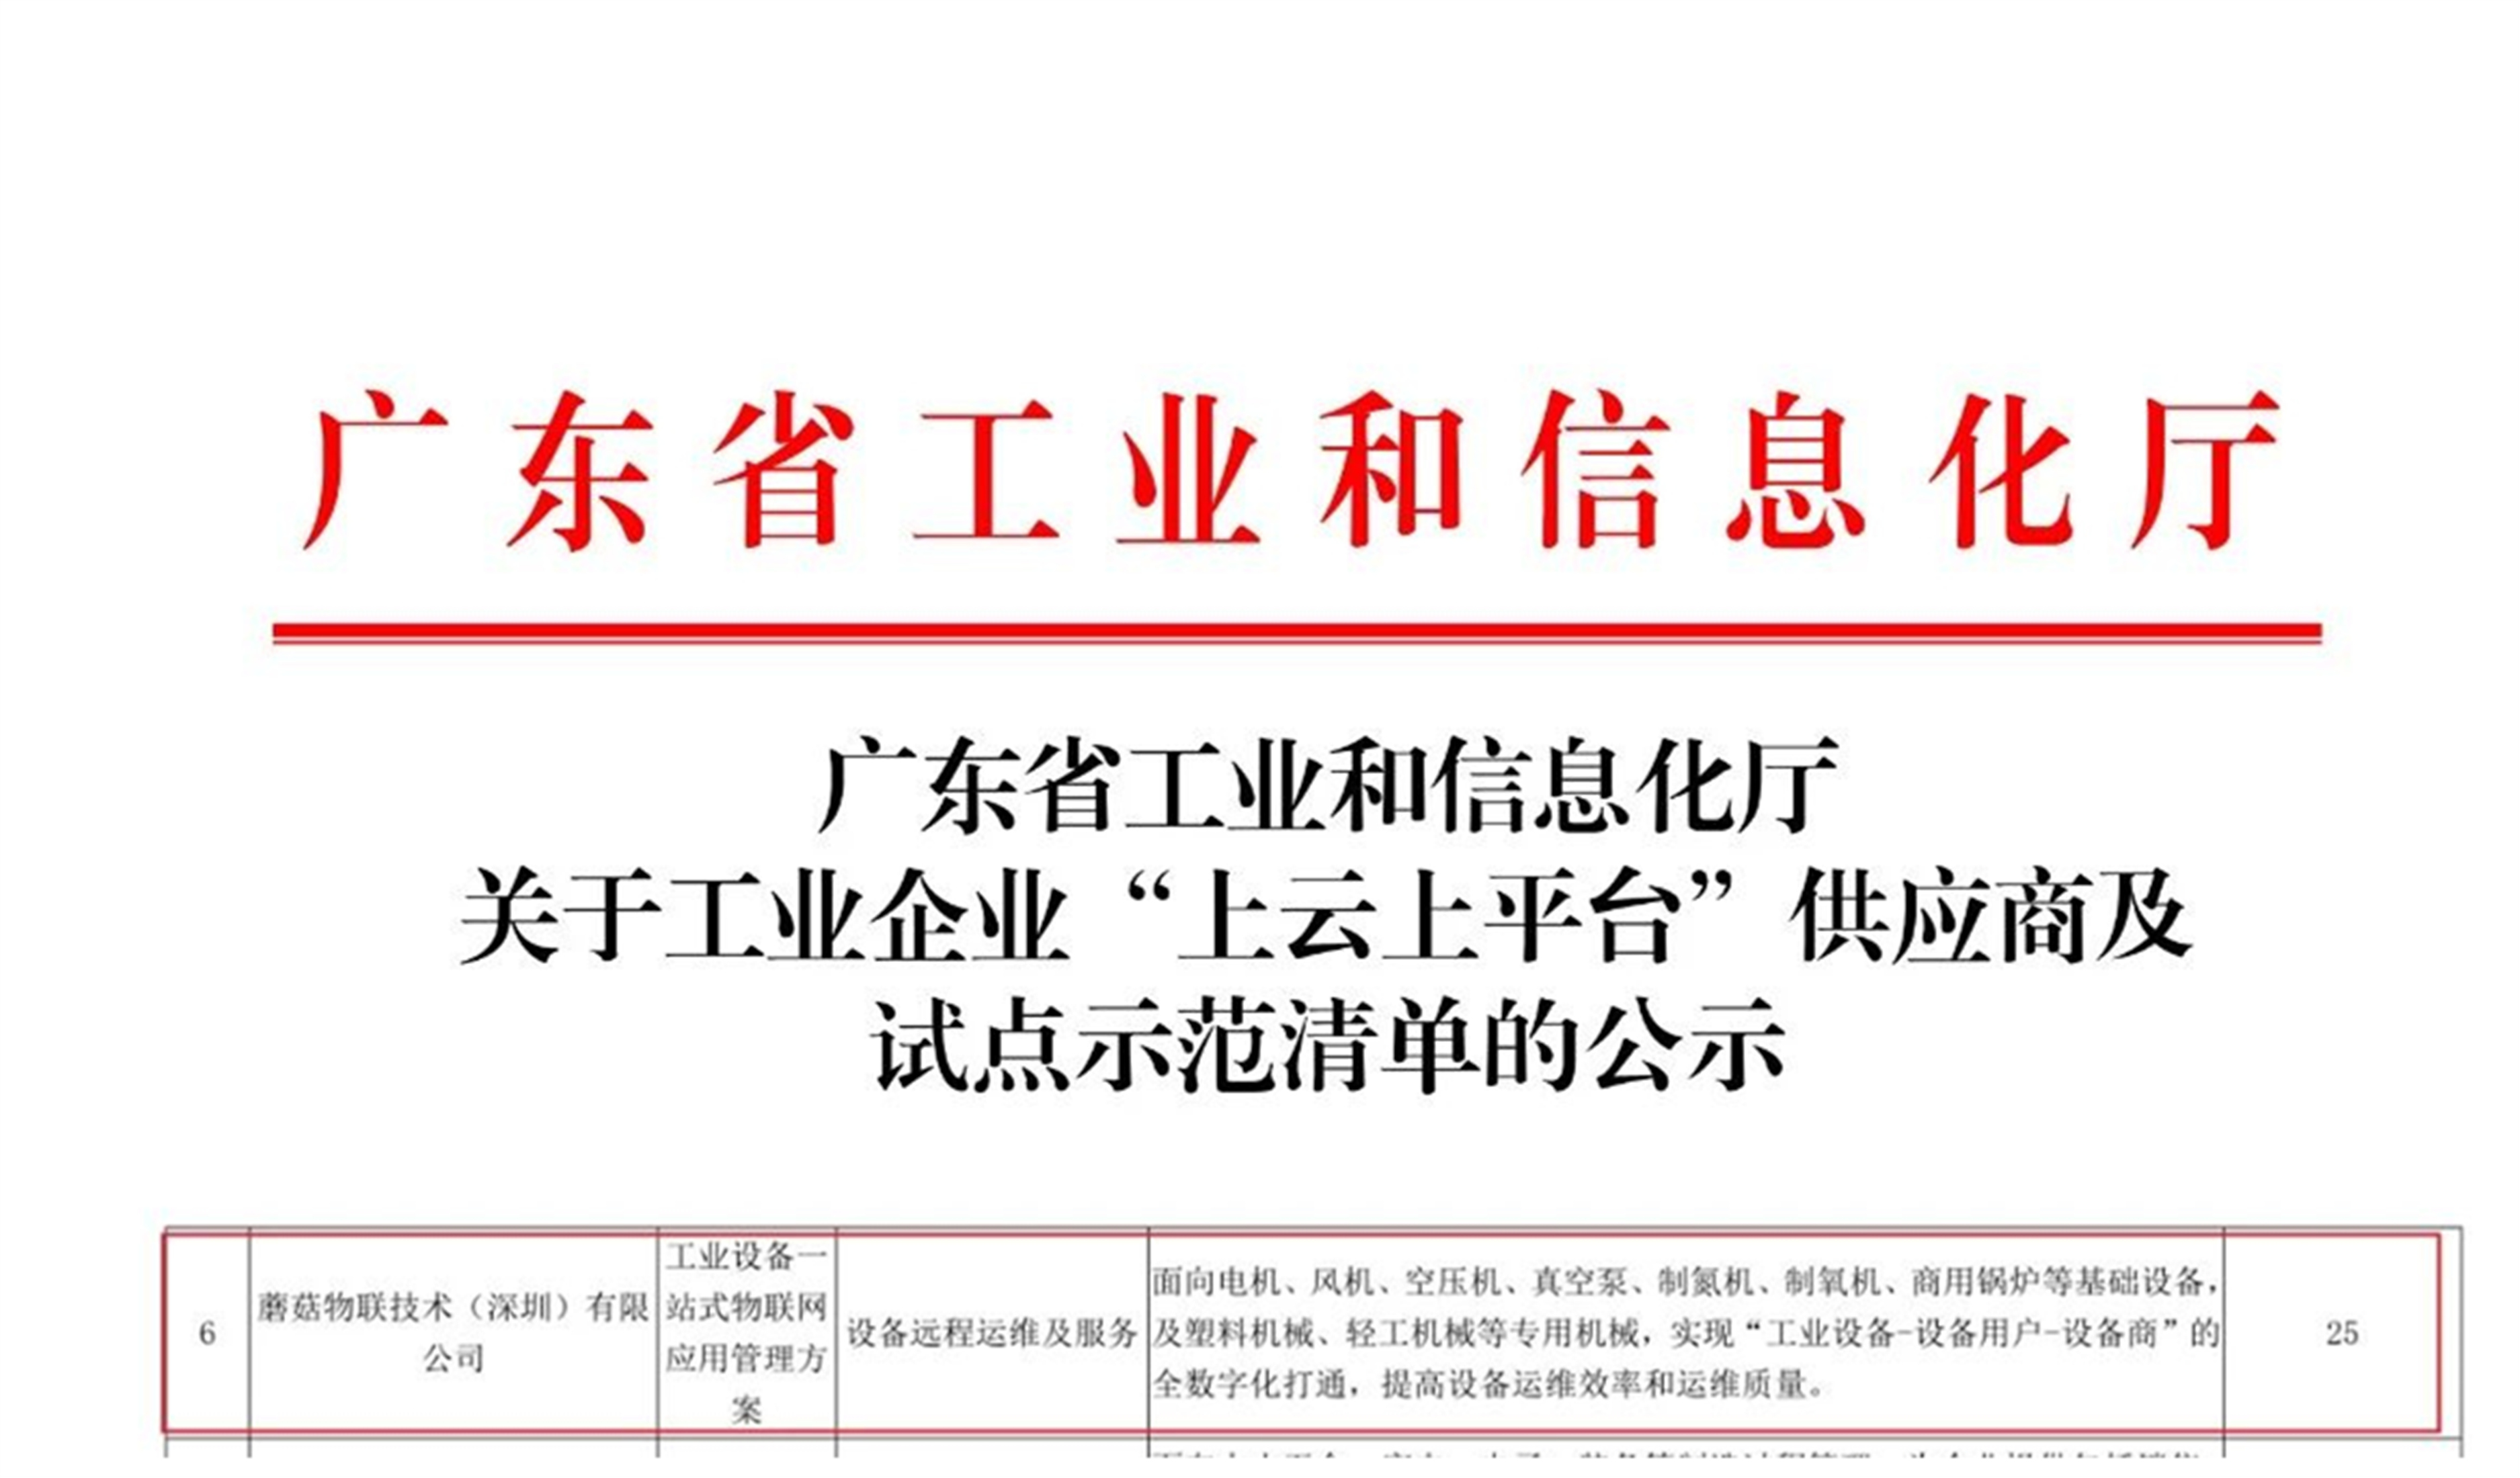 蘑菇物联入选”广东省工业互联网产业生态供给资源池“